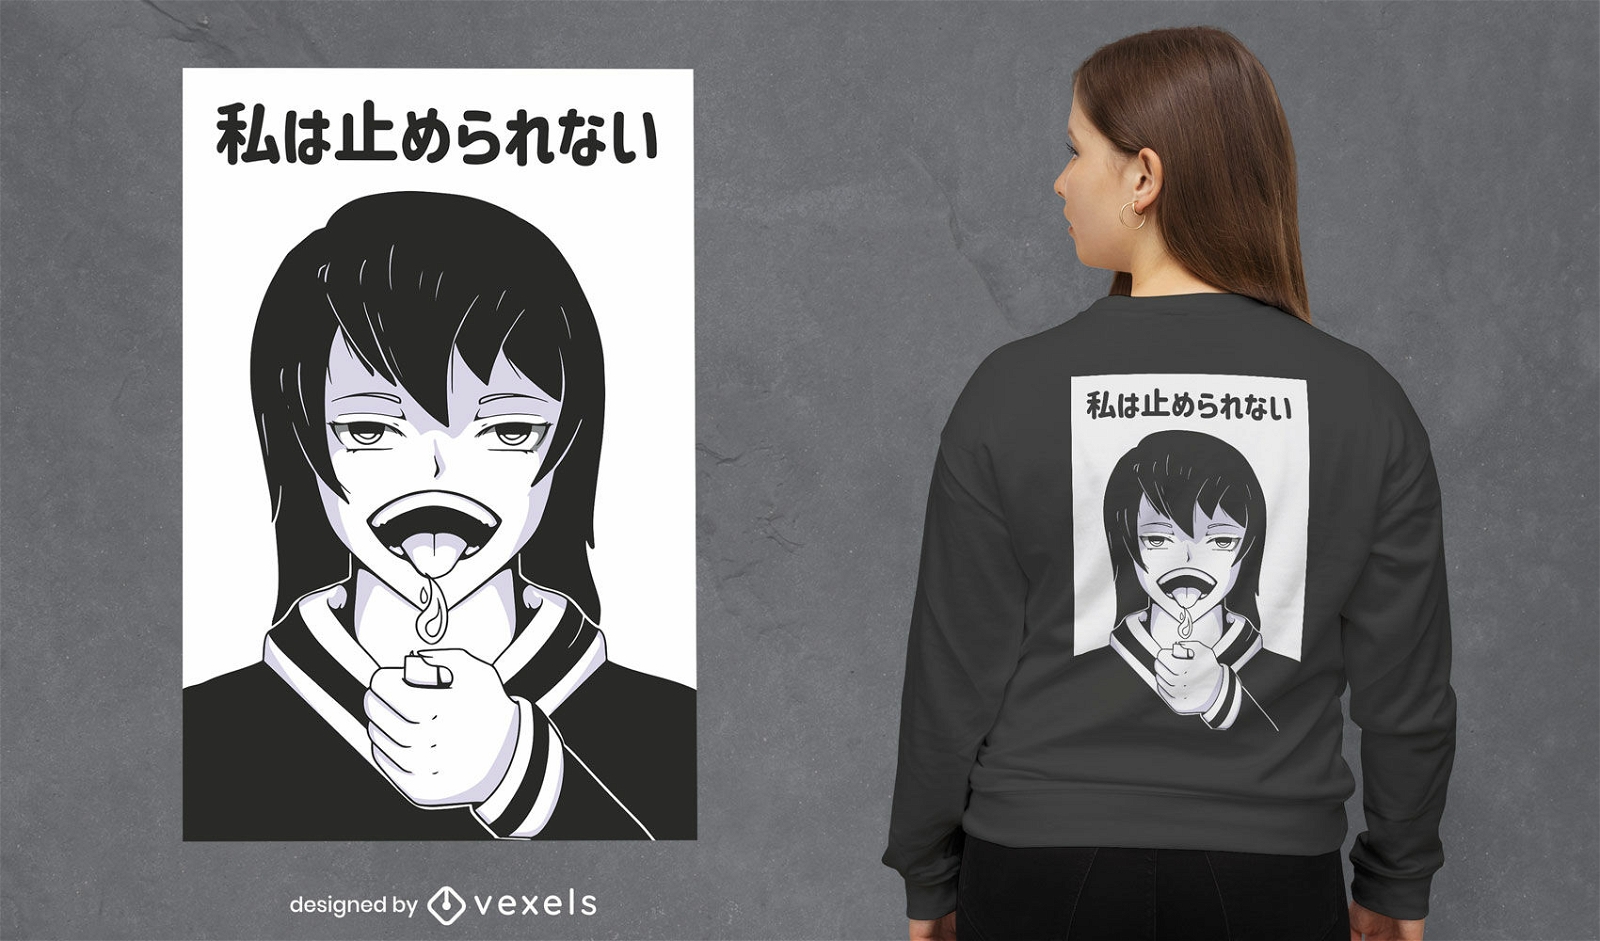 Impresionante diseño de camiseta de chica anime.